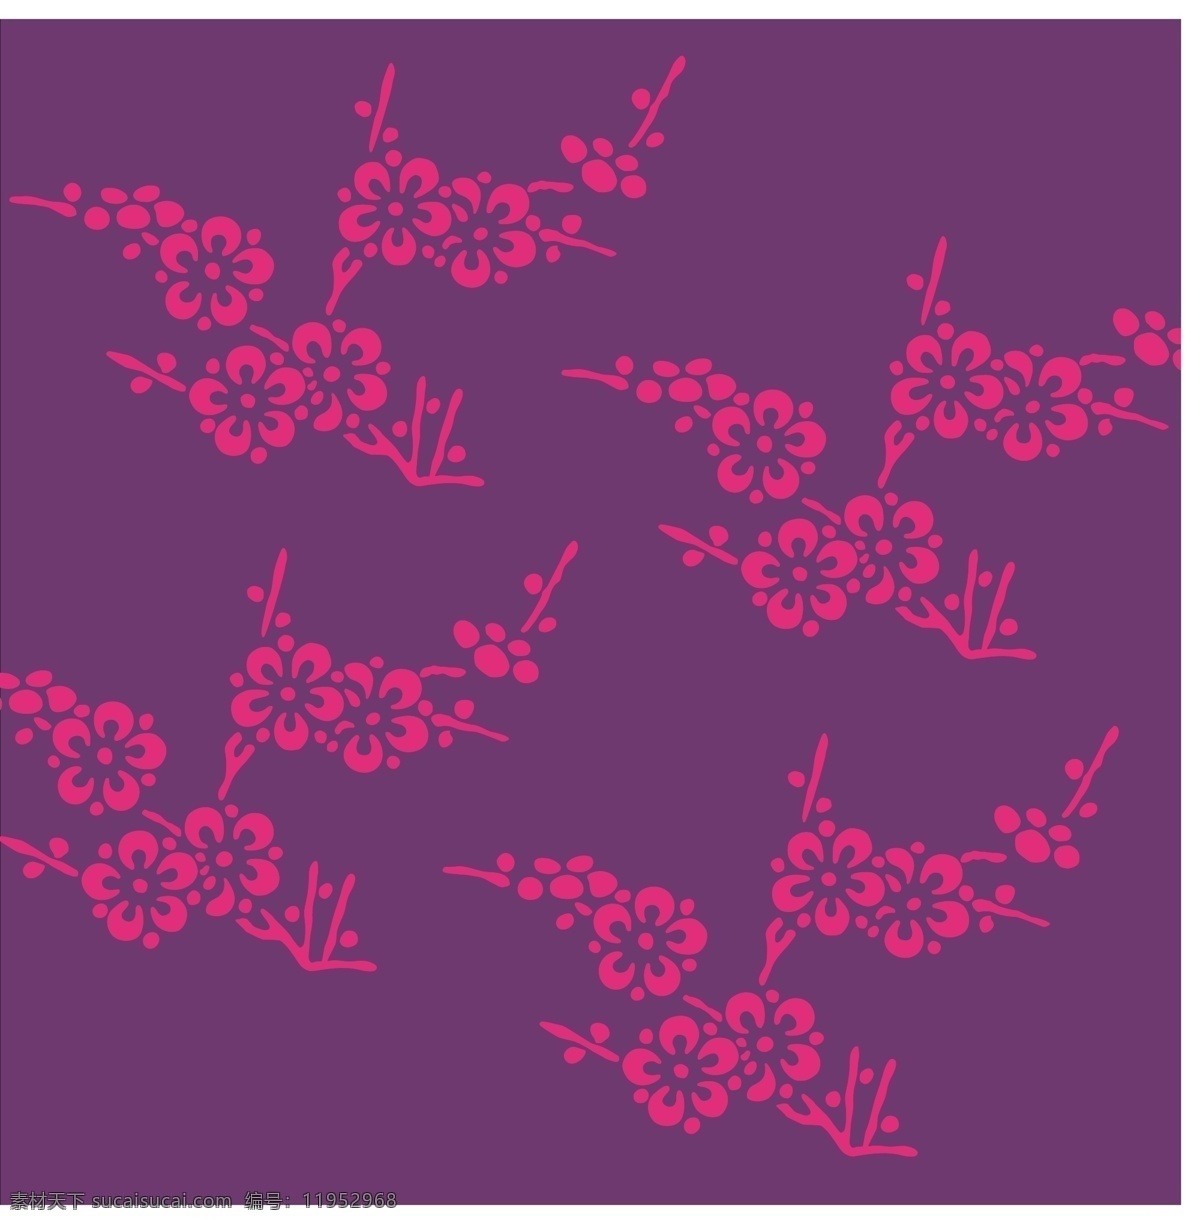 日本 传统 花卉 植物 图案 矢量 传统图案 花纹 竹子 松树 梅花 其他矢量 矢量素材 矢量图库 生物世界 树木树叶